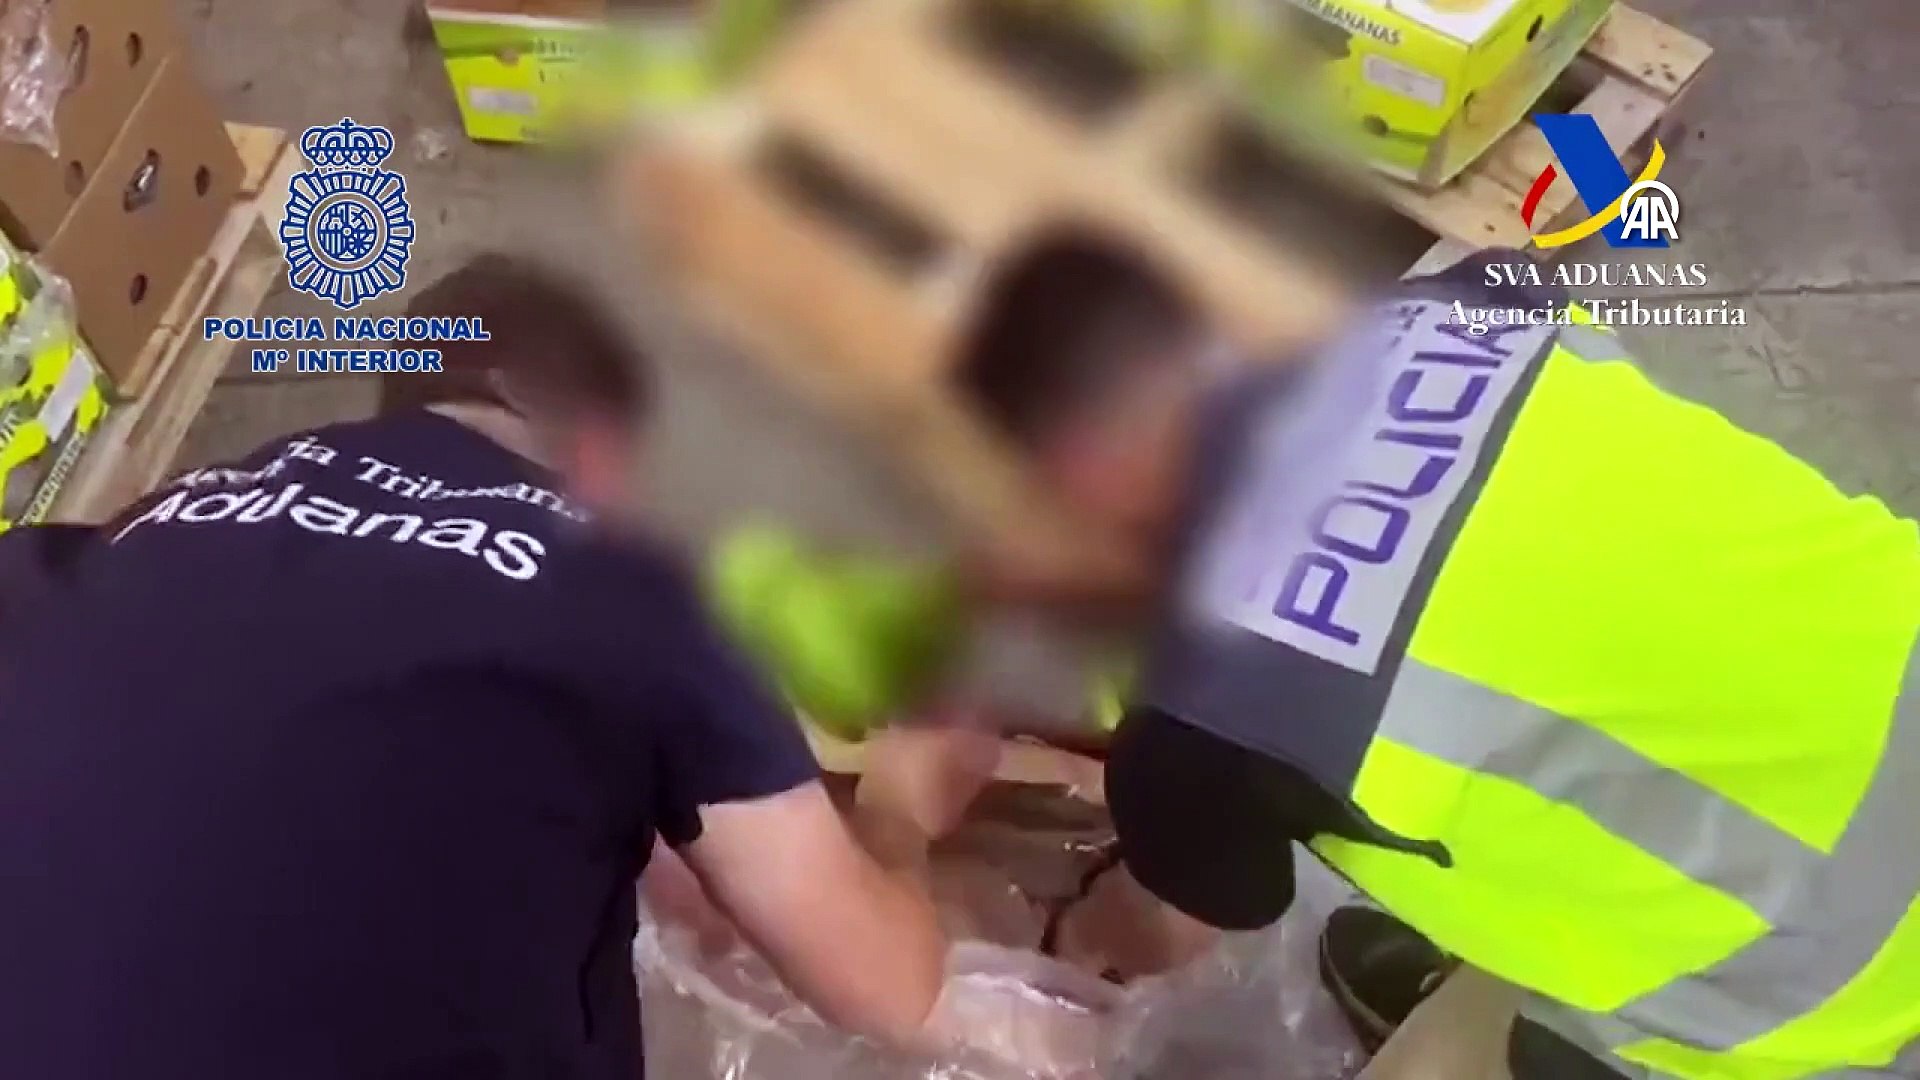 Bir muz kolisi vakası da İspanya'da! 9,4 ton kokain ele geçirildi -  Dailymotion Video